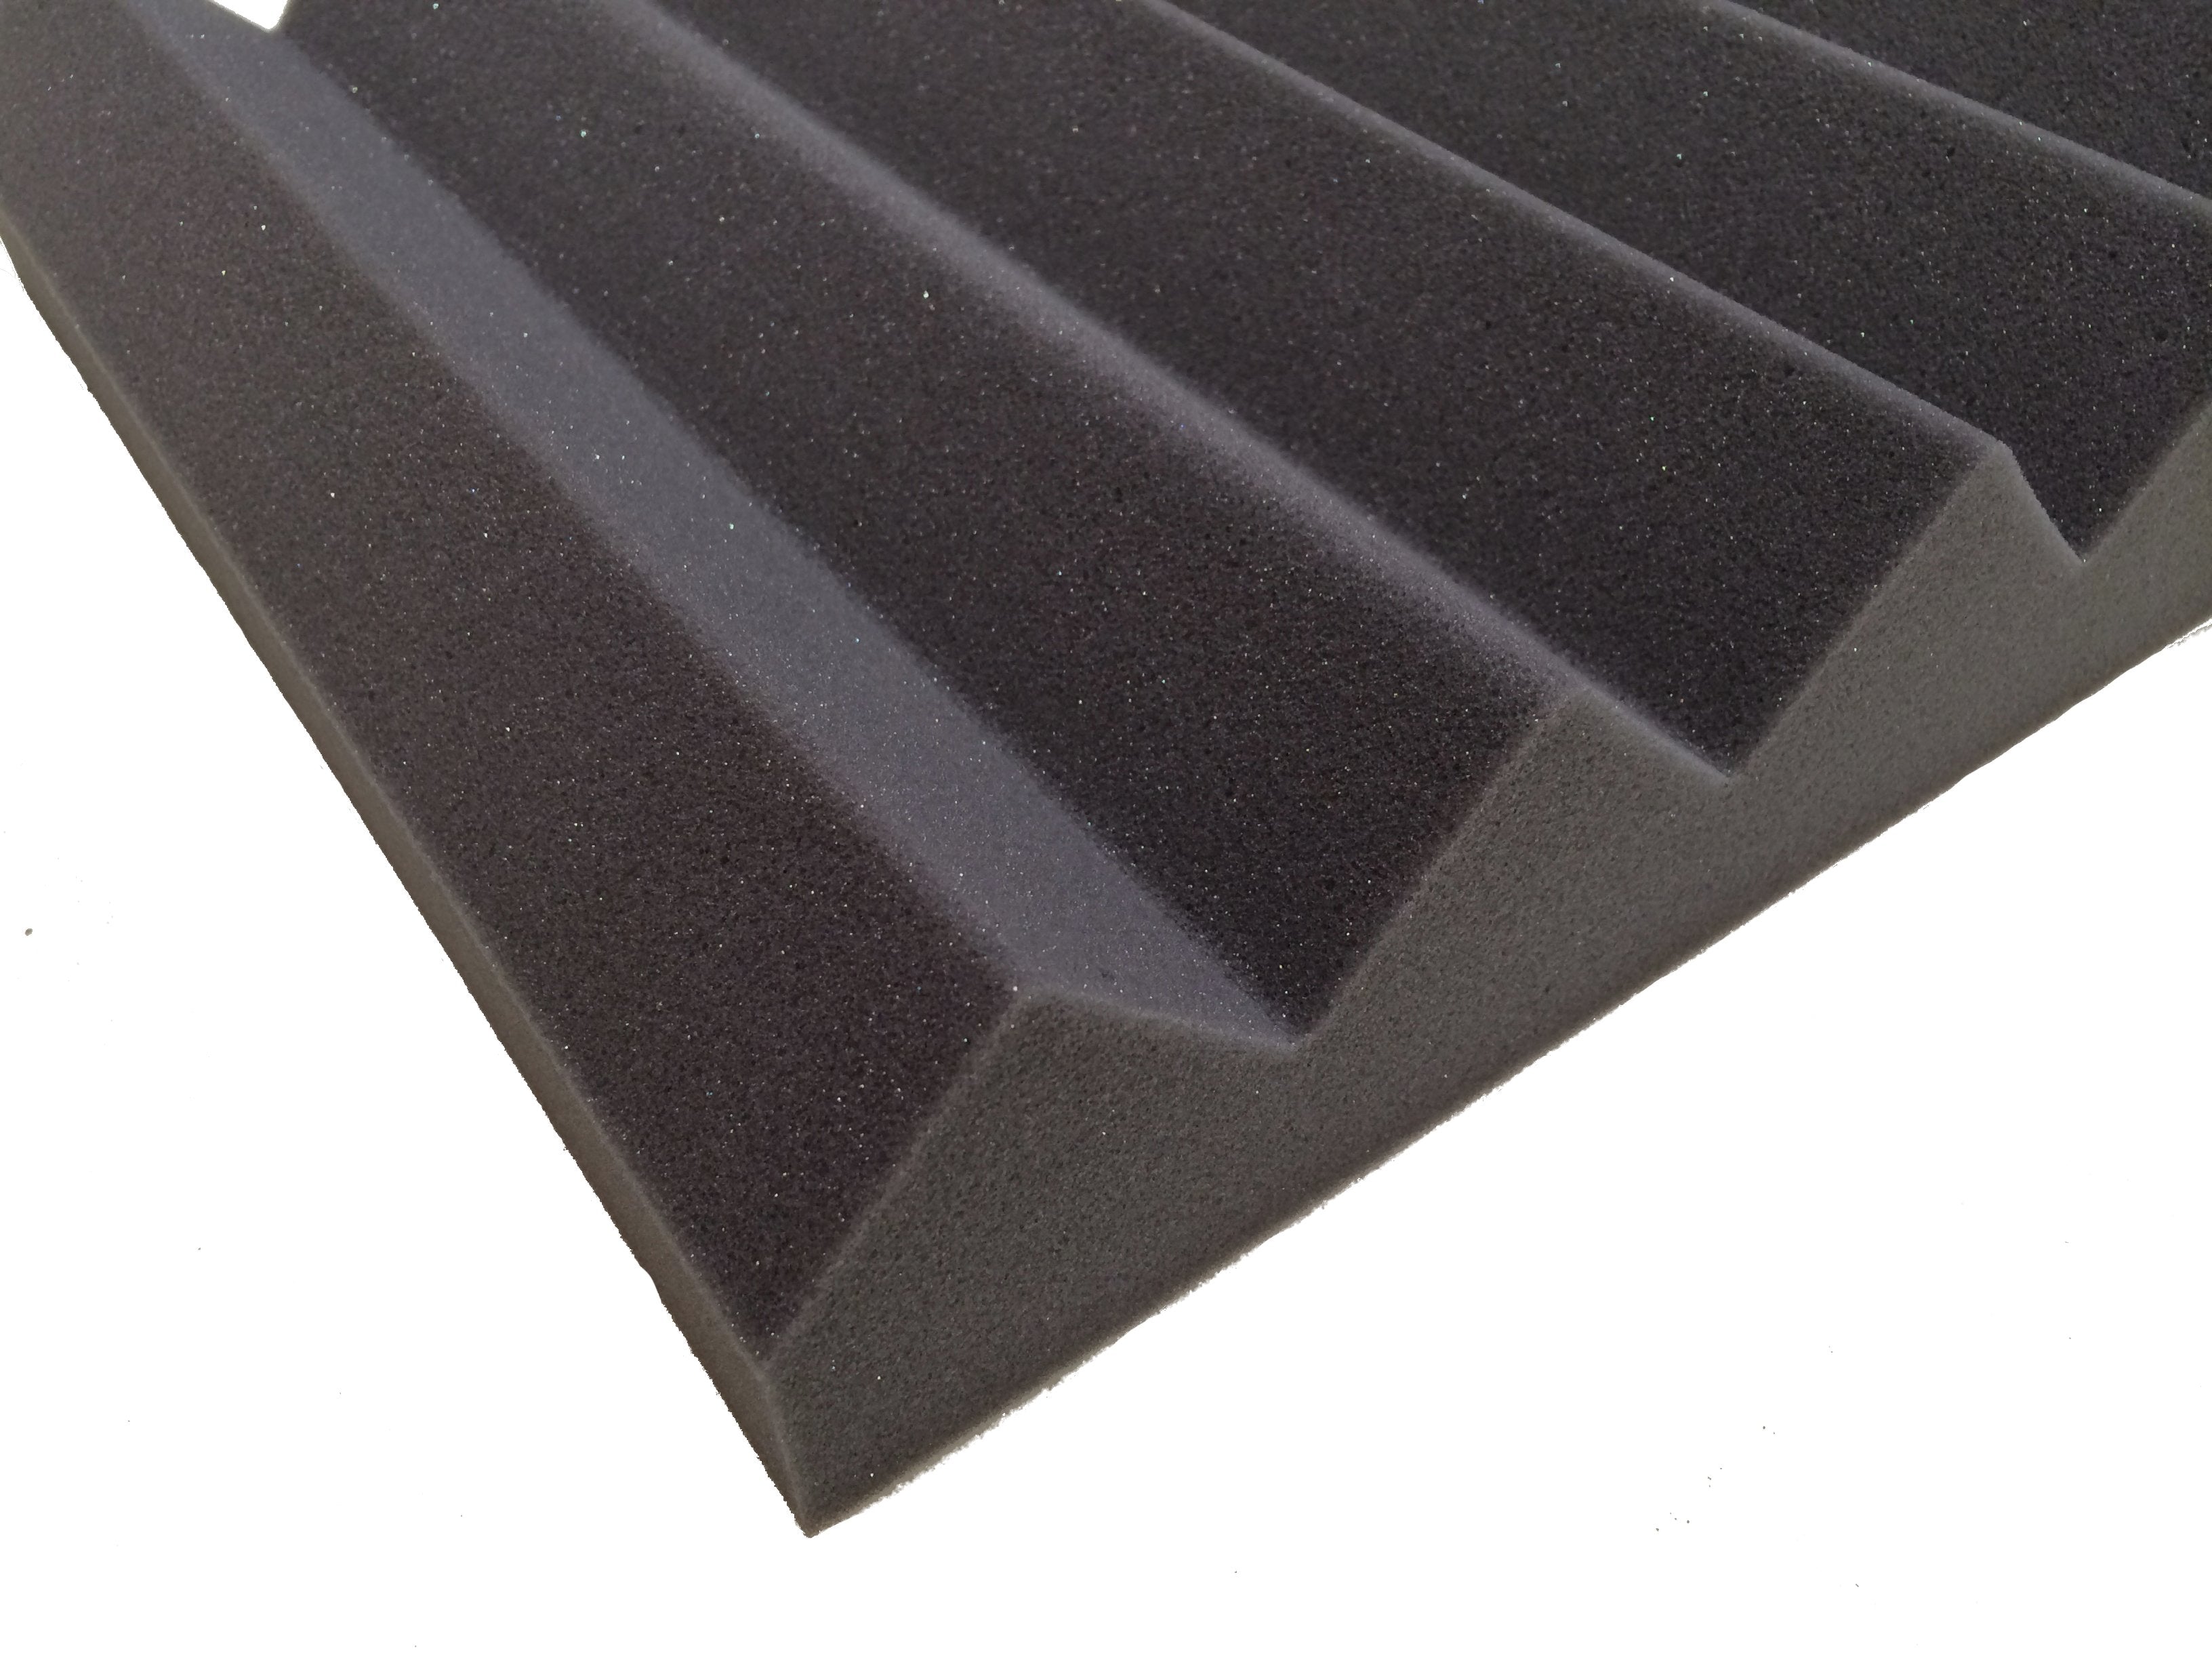 Wedge PRO 30" Acoustic Studio Foam Tile Pack - Advanced Acoustics